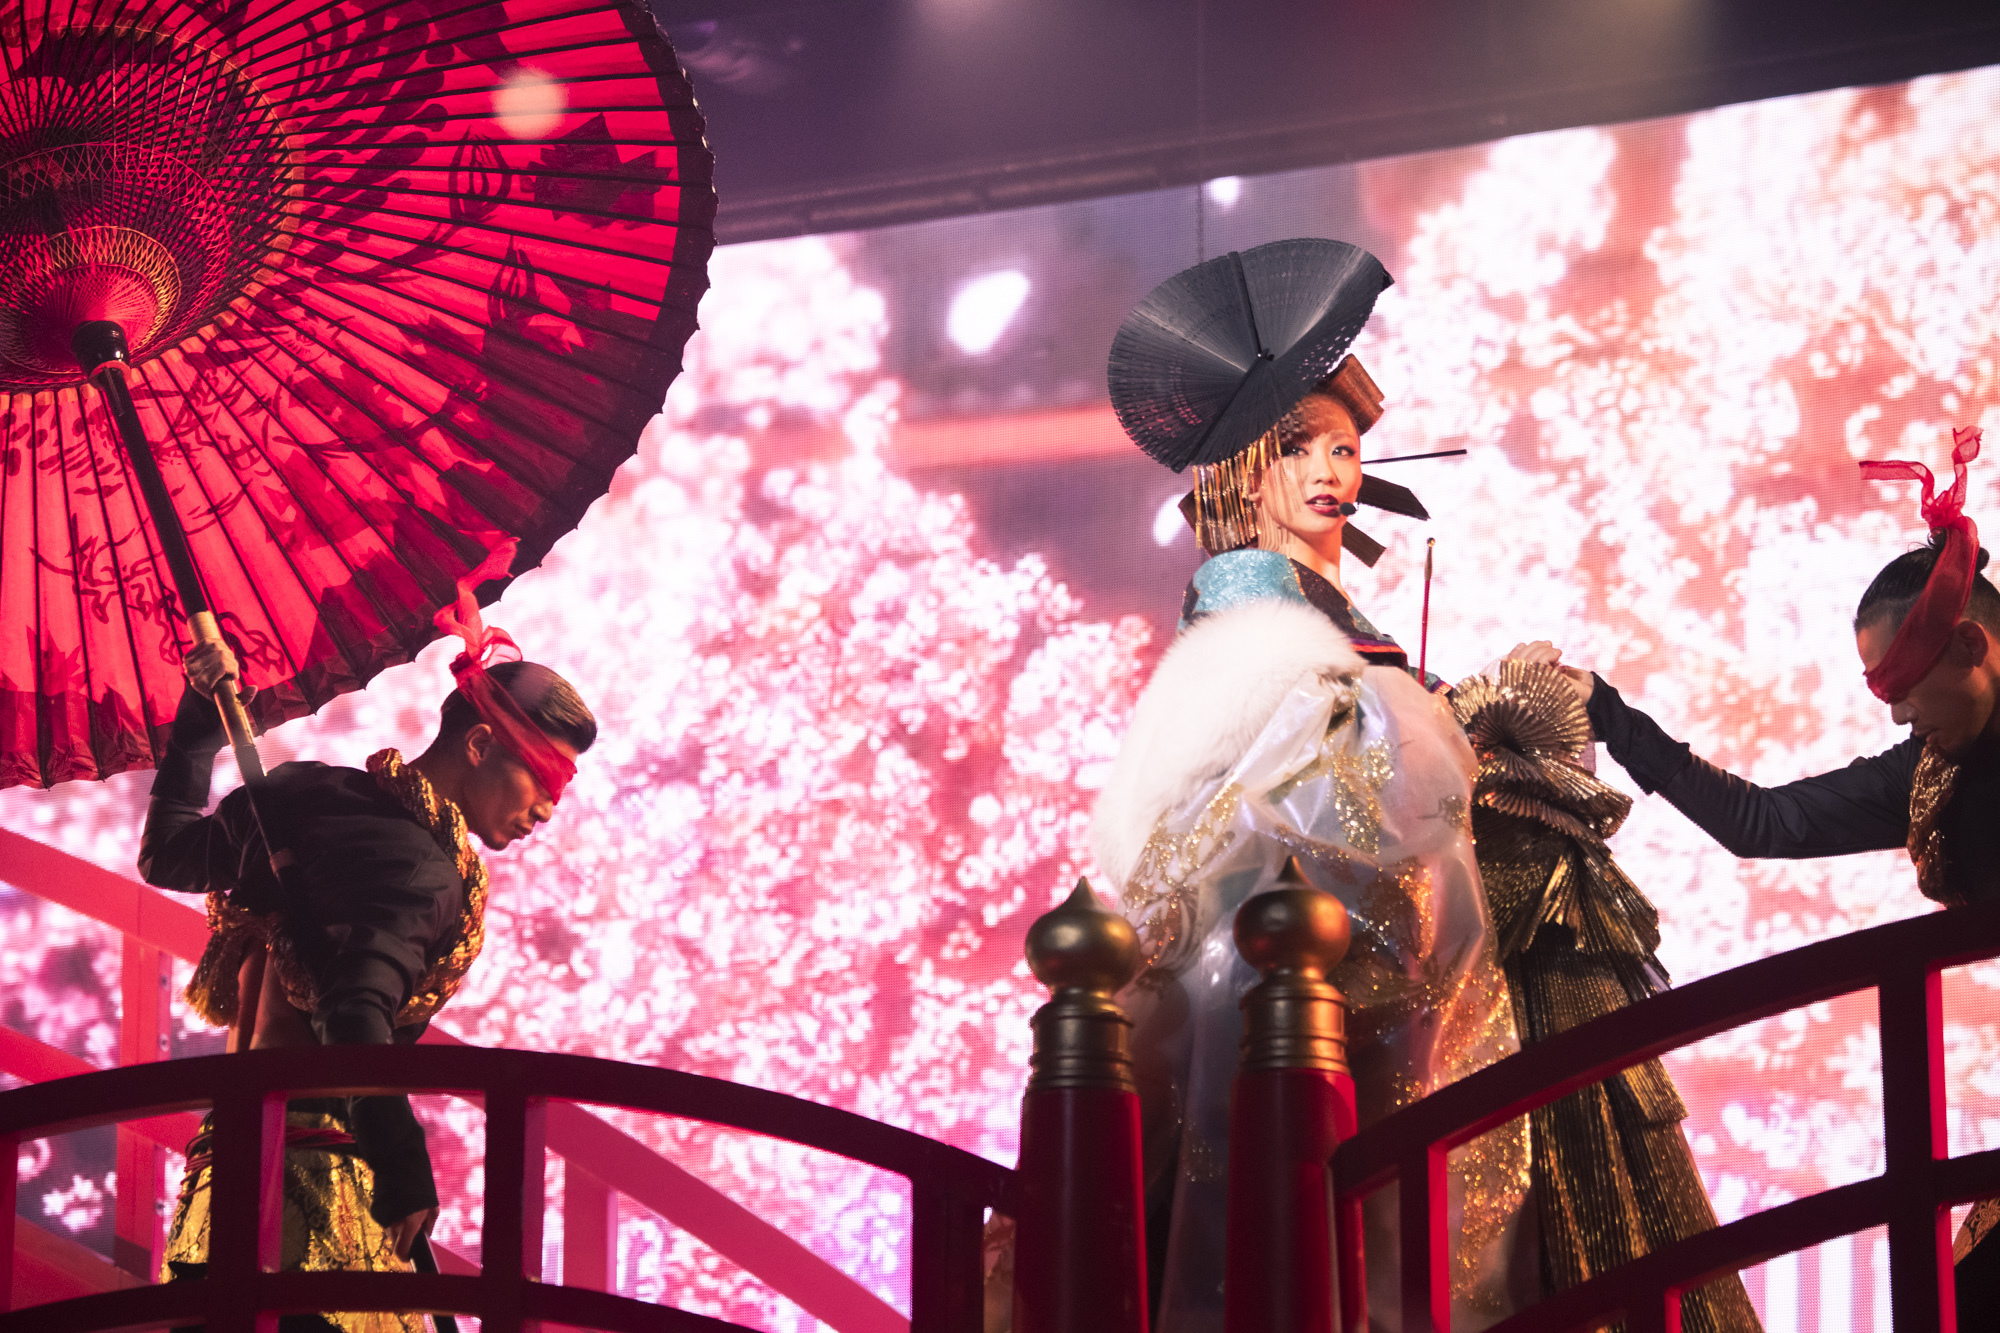 倖田來未が最高の公演と名高い Japonesque を 大阪文化芸術fes 19 で再現 肉体芸術と呼ぶにふさわしい至極のパフォーマンス Spice エンタメ特化型情報メディア スパイス